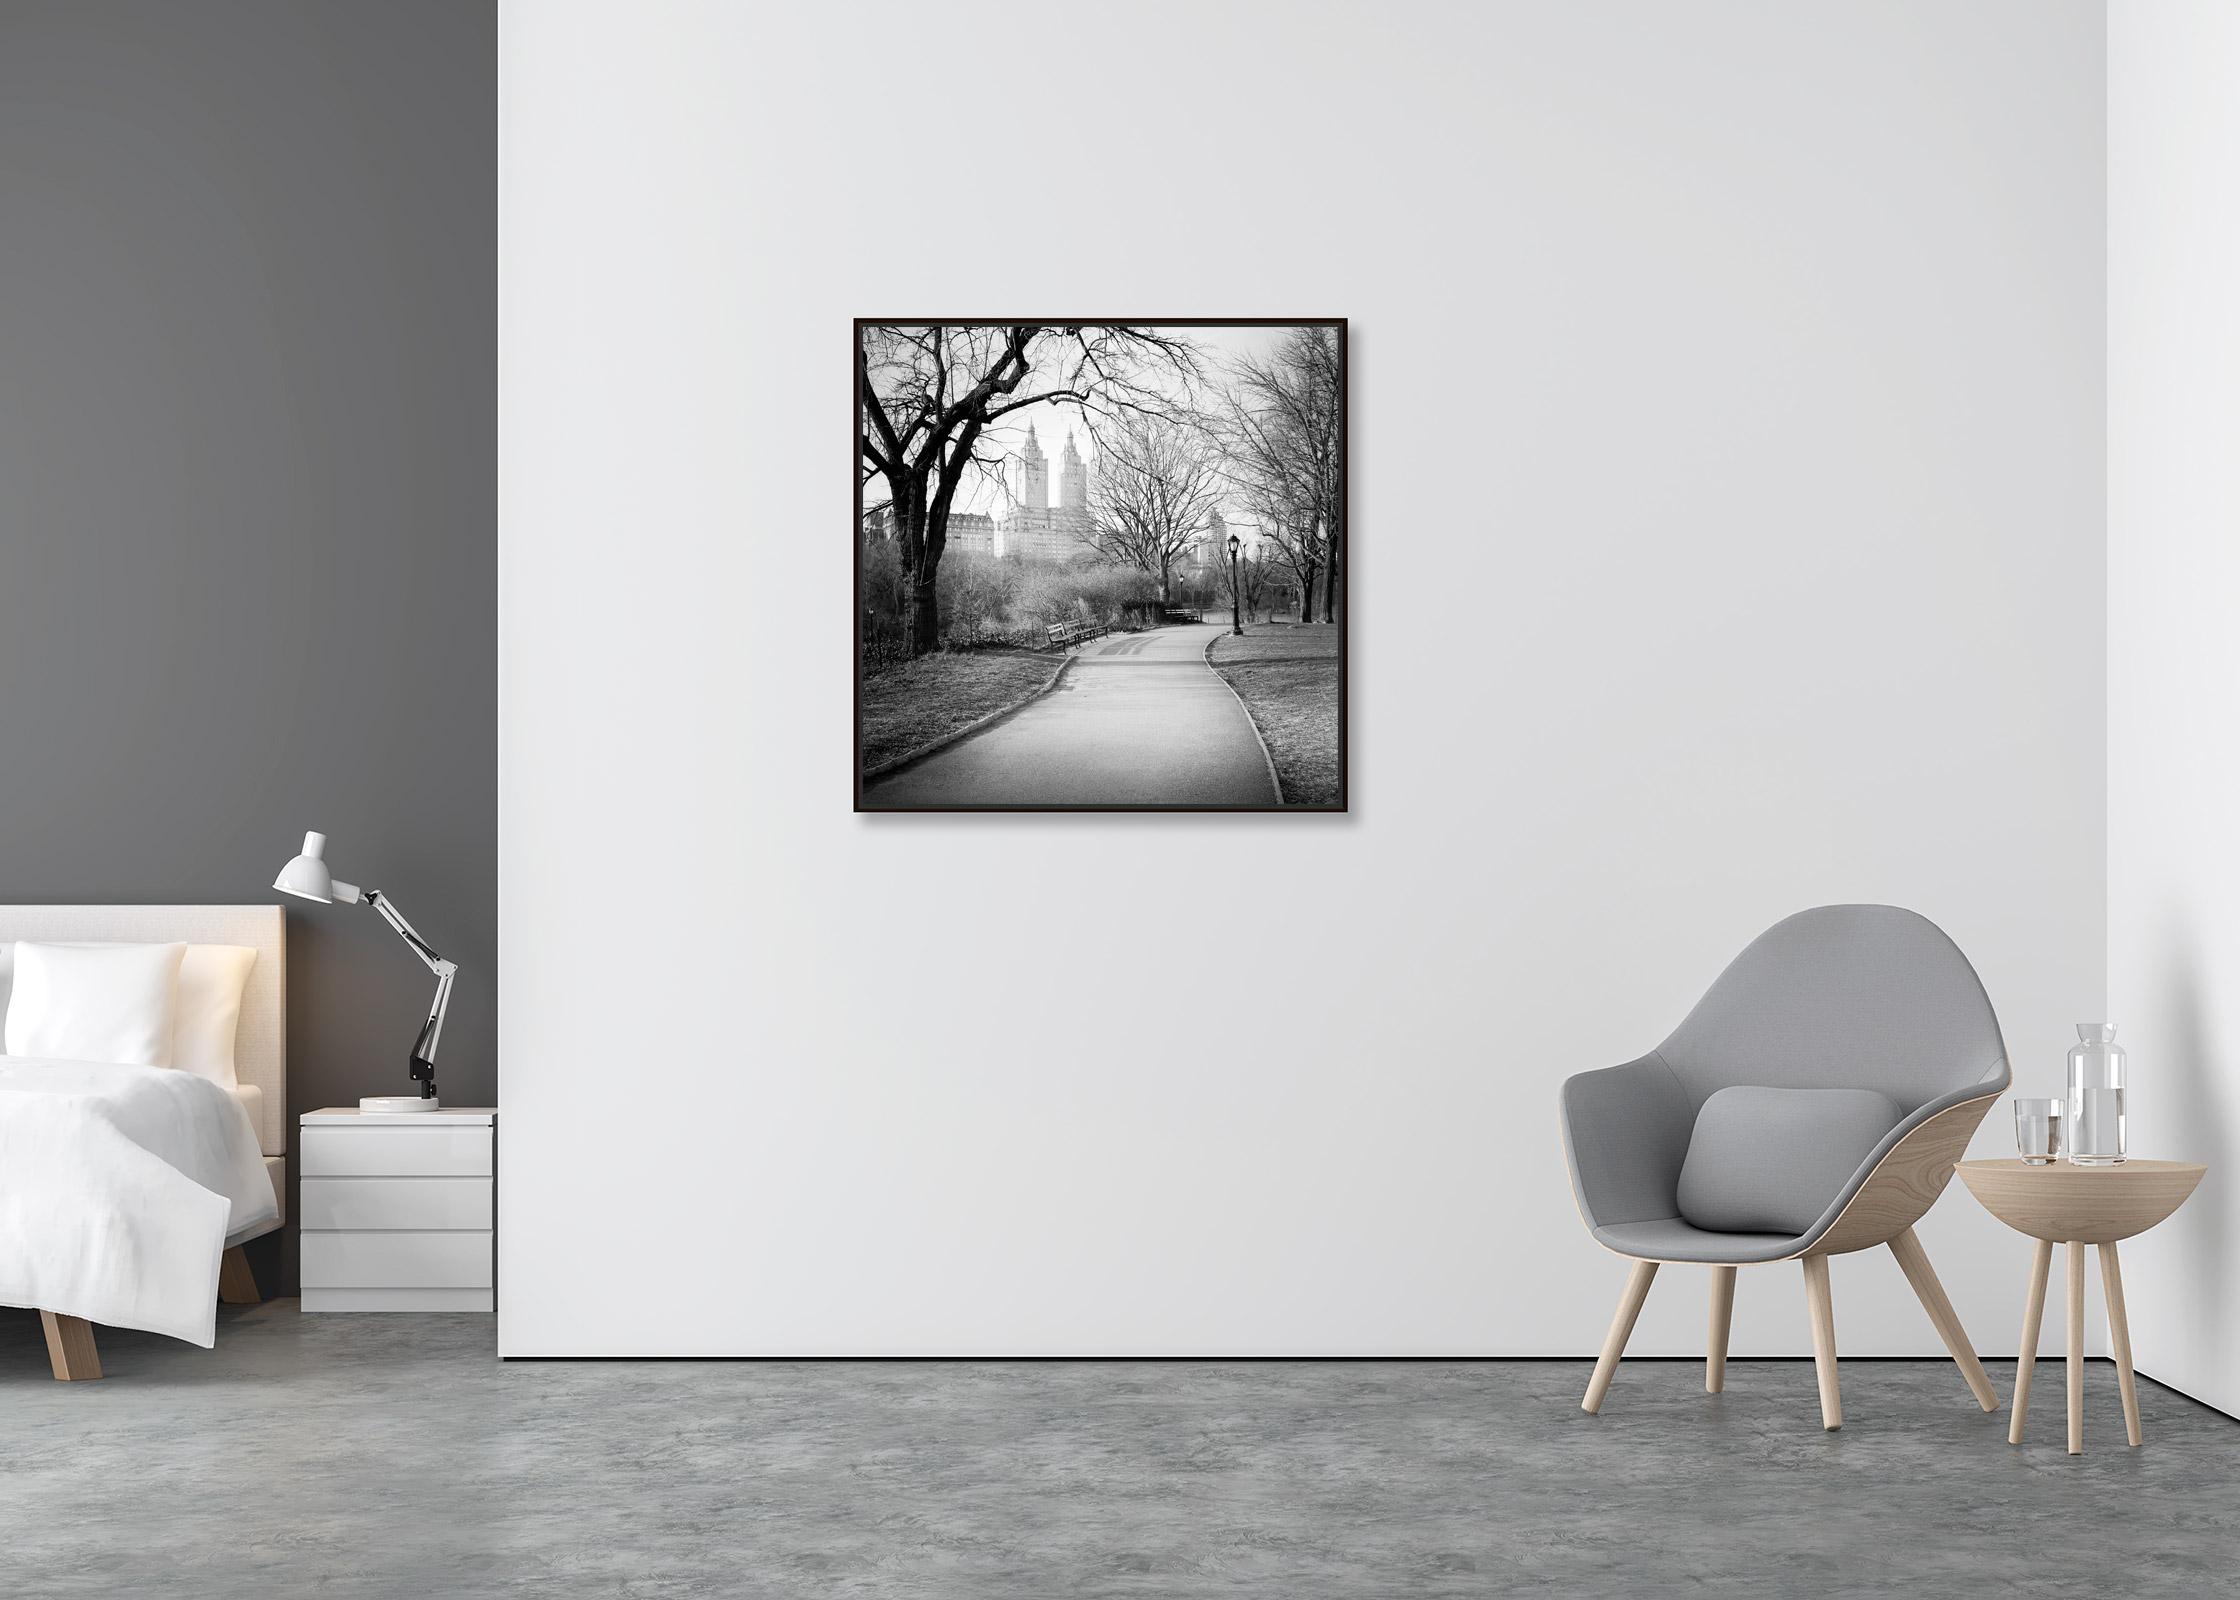 The San Remo, Central Park, New York City, photographie de paysage urbain en noir et blanc - Contemporain Photograph par Gerald Berghammer